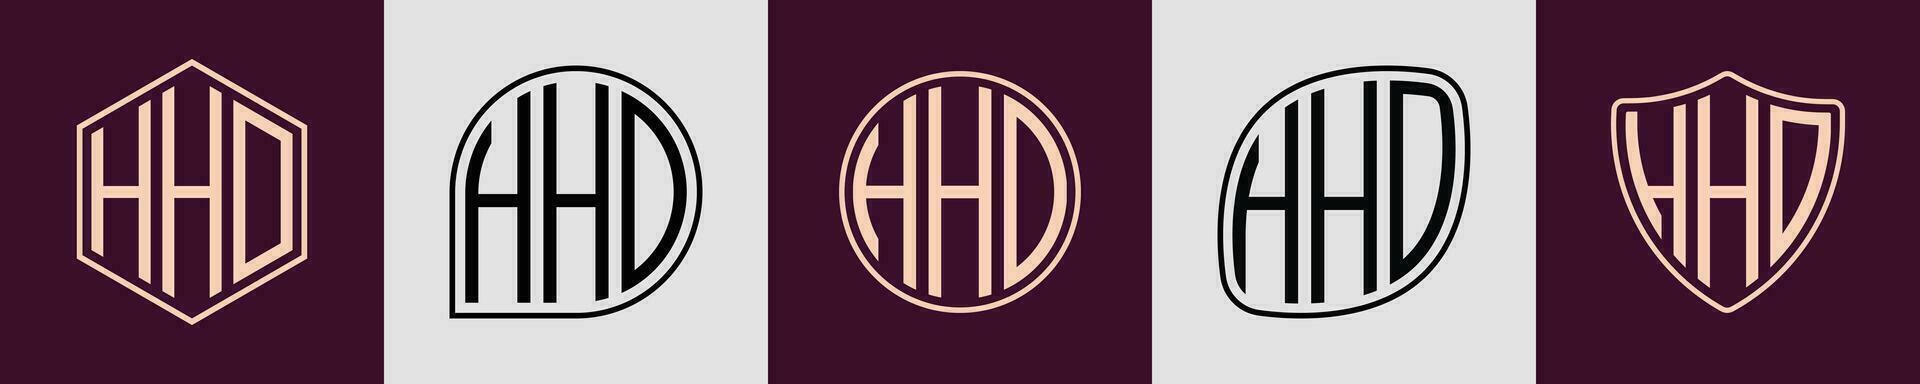 creativo semplice iniziale monogramma hhd logo disegni. vettore